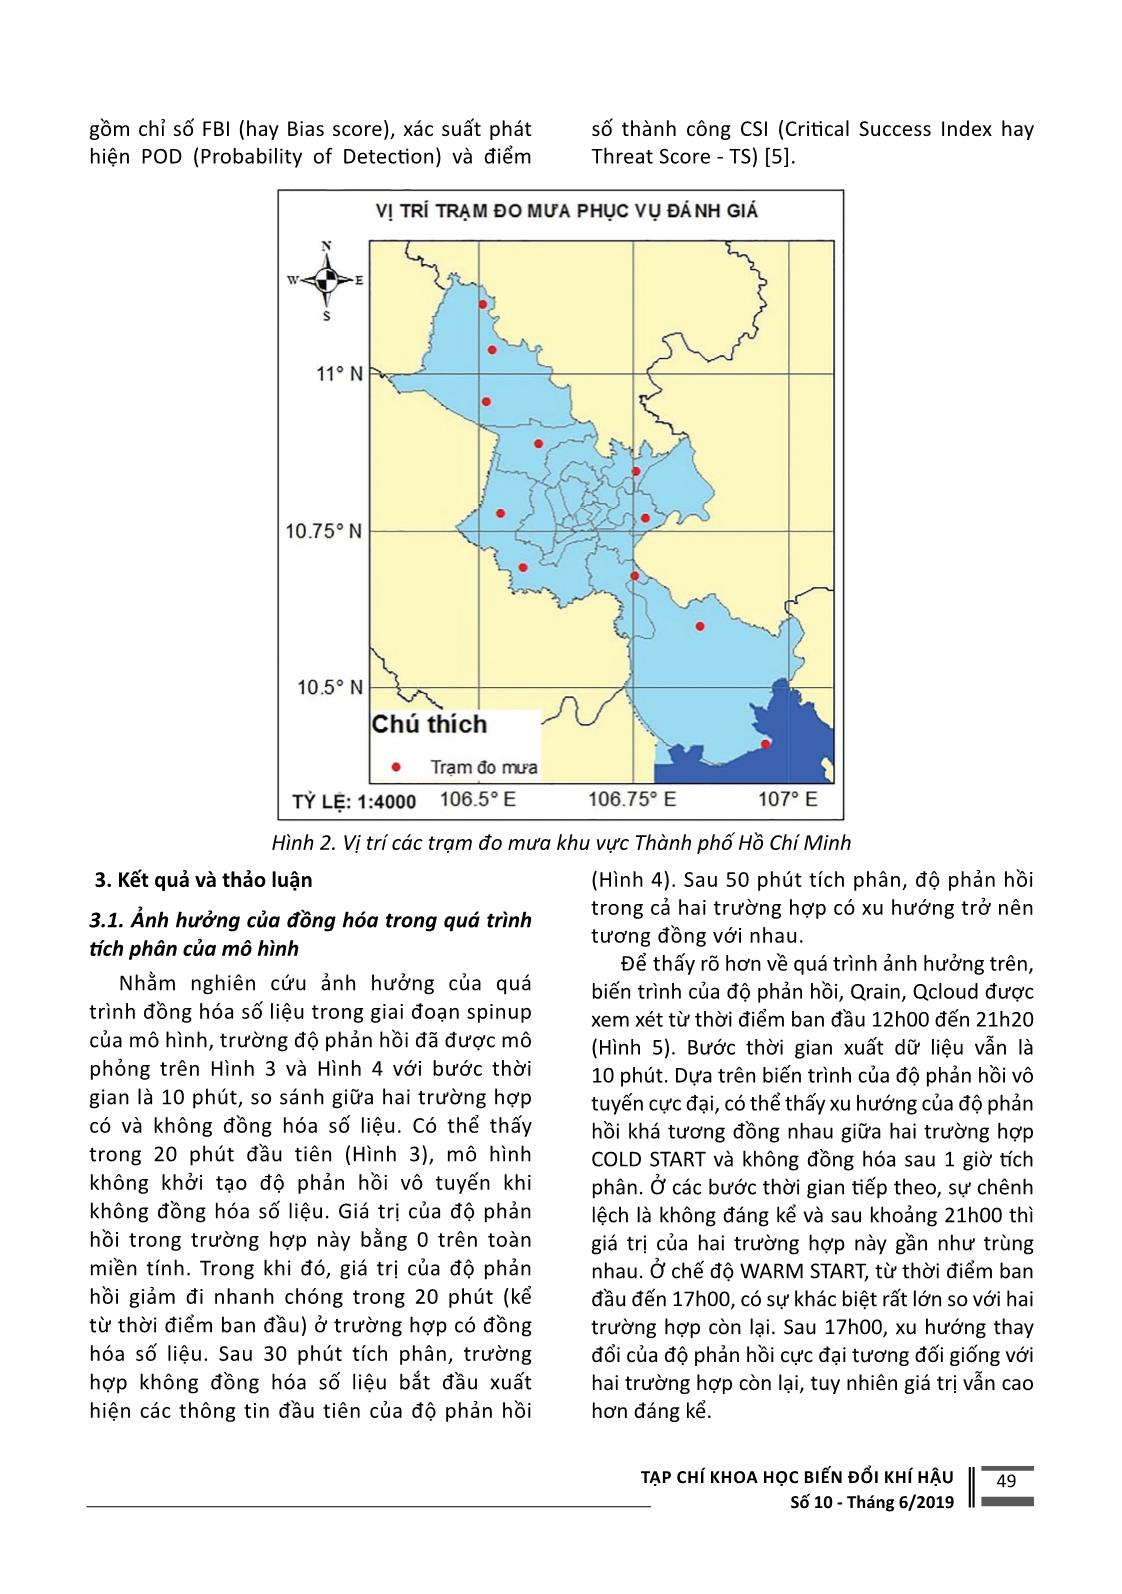 Ứng dụng đồng hóa số liệu radar dự báo mưa lớn tại khu vực thành phố Hồ Chí Minh trang 3